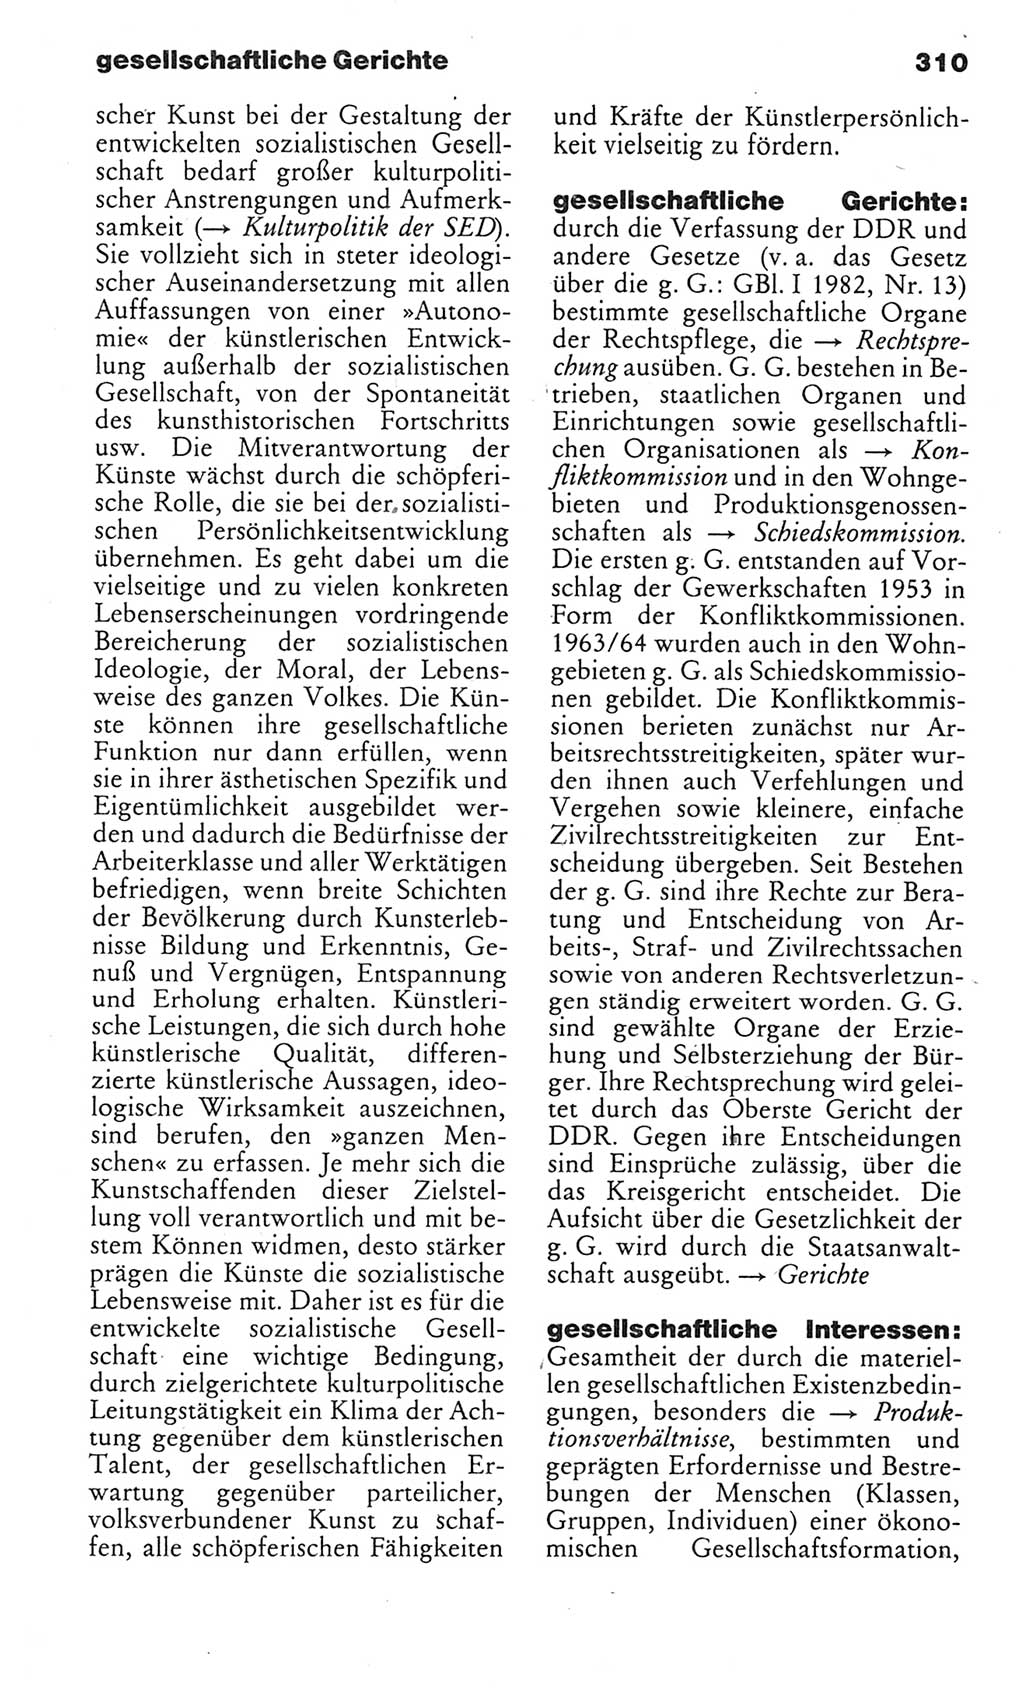 Kleines politisches Wörterbuch [Deutsche Demokratische Republik (DDR)] 1985, Seite 310 (Kl. pol. Wb. DDR 1985, S. 310)